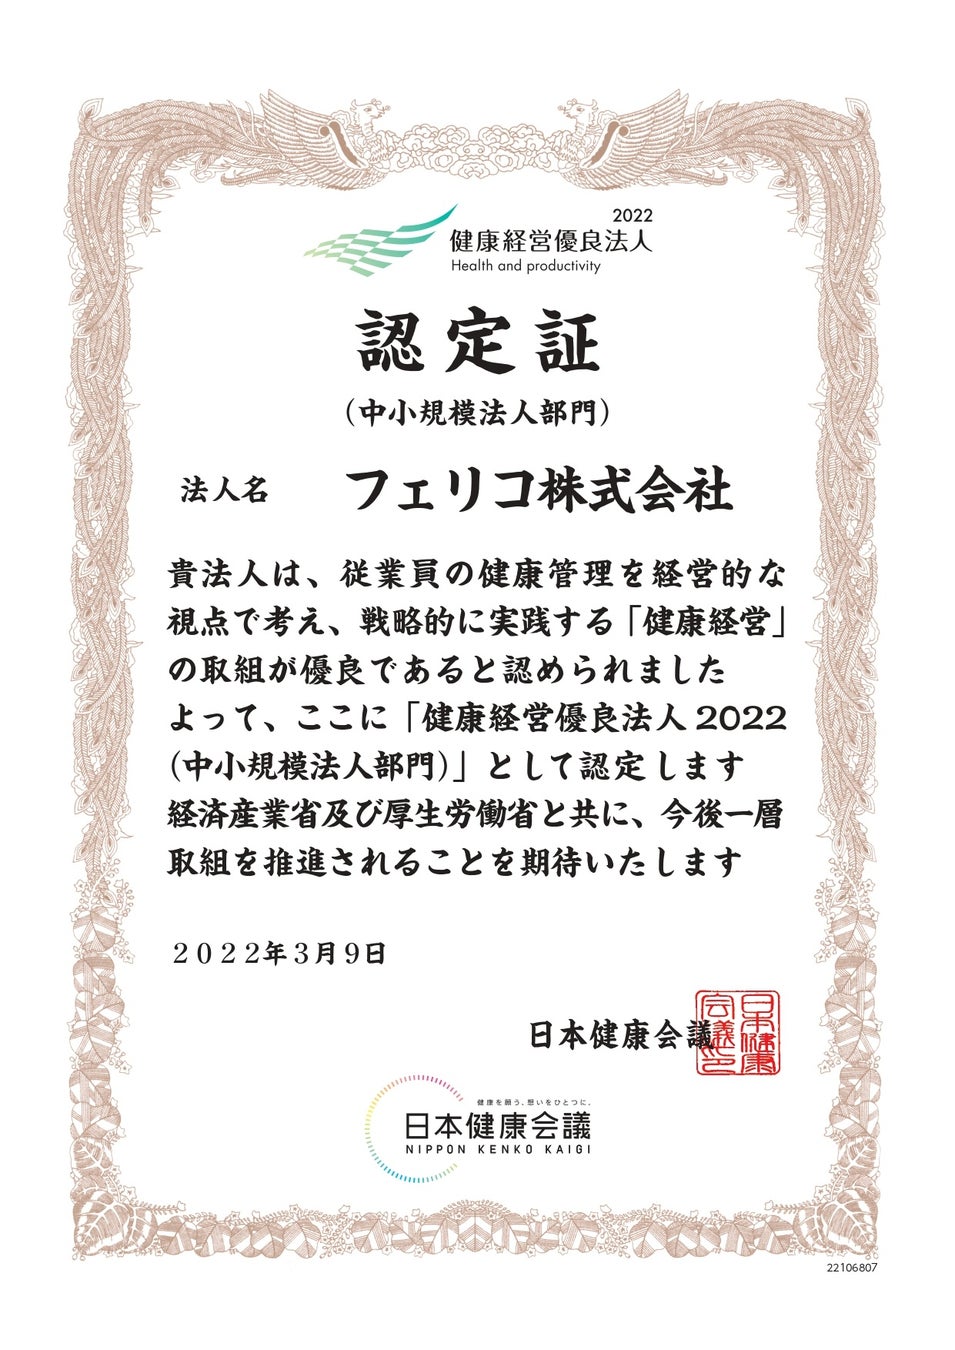 英国発化粧品ブランド LUSH　日本における同性婚法制化に向けた啓発キャンペーン「結婚の自由をすべての人に」を3月17日（木）より日本全国で開始